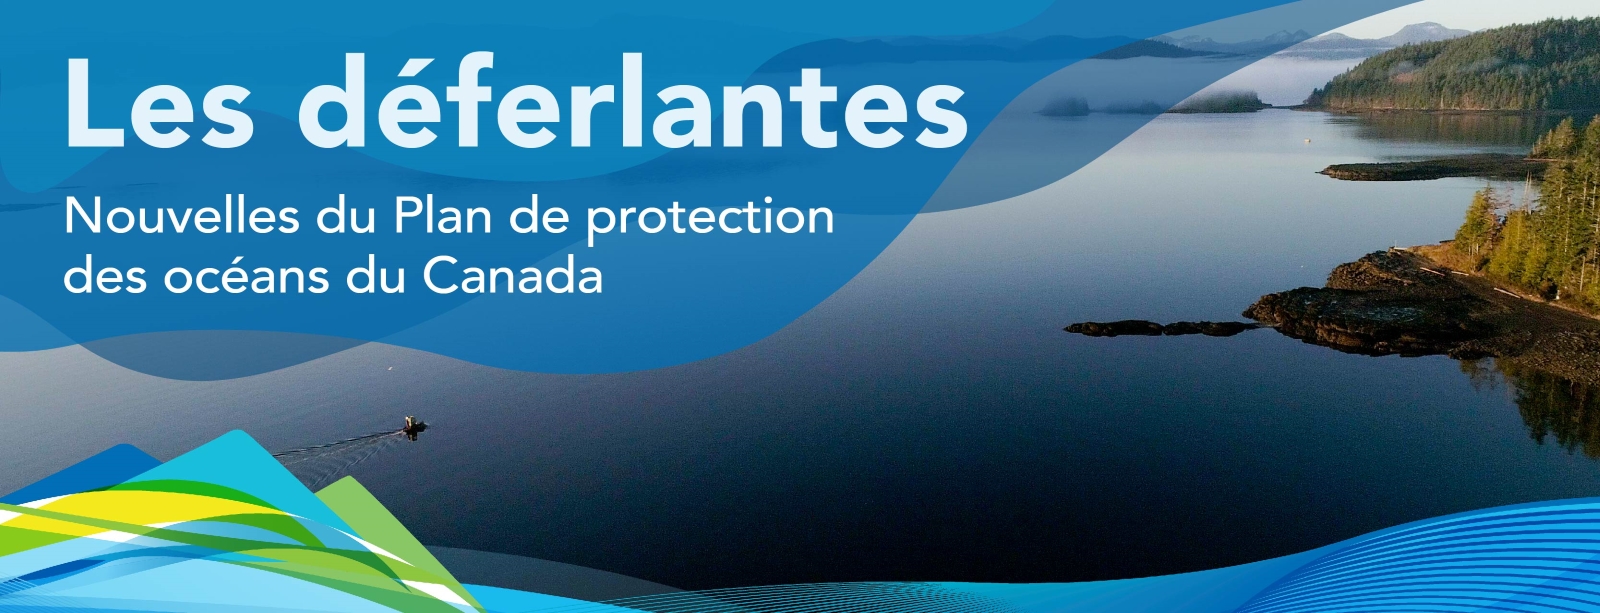 Les déferlantes : Nouvelles du Plan de protection des océans du Canada